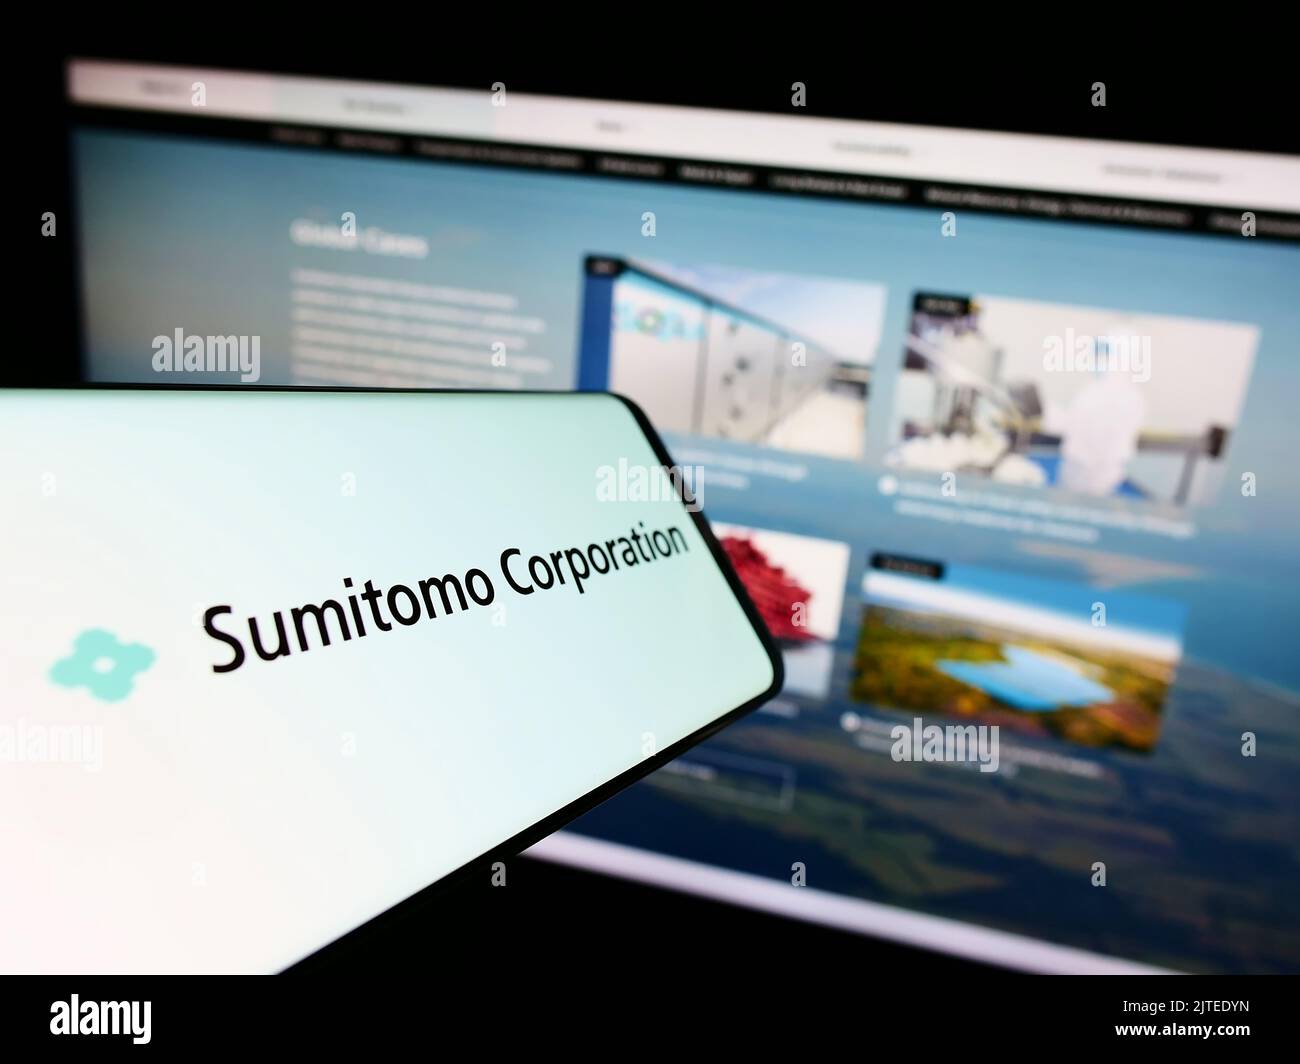 Smartphone con el logotipo de la empresa japonesa Sumitomo Corporation en la pantalla delante del sitio web de la empresa. Enfoque en el centro de la pantalla del teléfono. Foto de stock